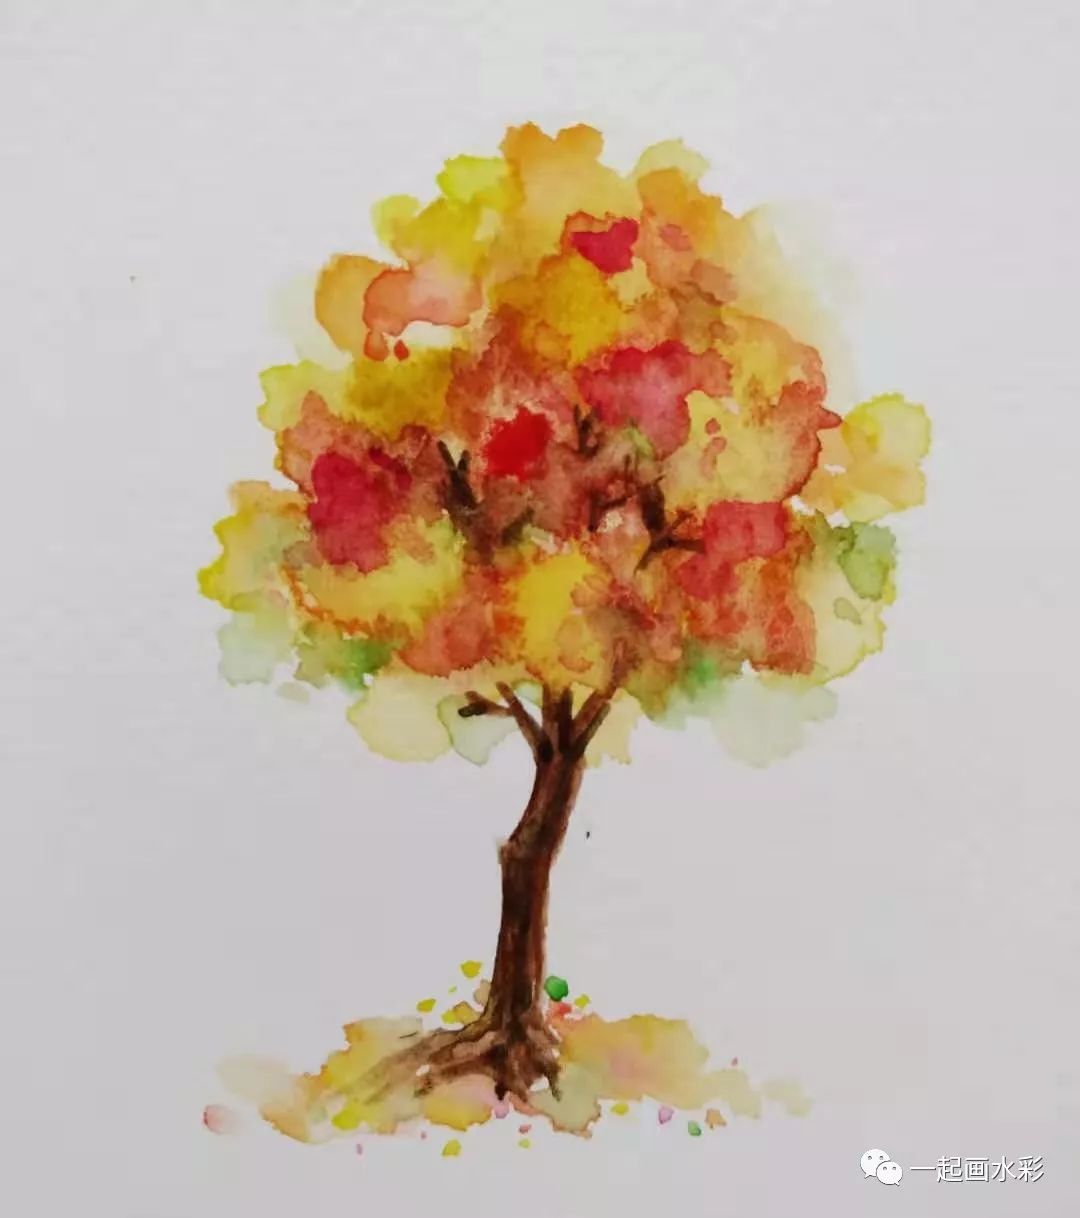 一起画水彩 征集令 画一棵秋天的树 试一下这支水彩笔怎么样 松鼠